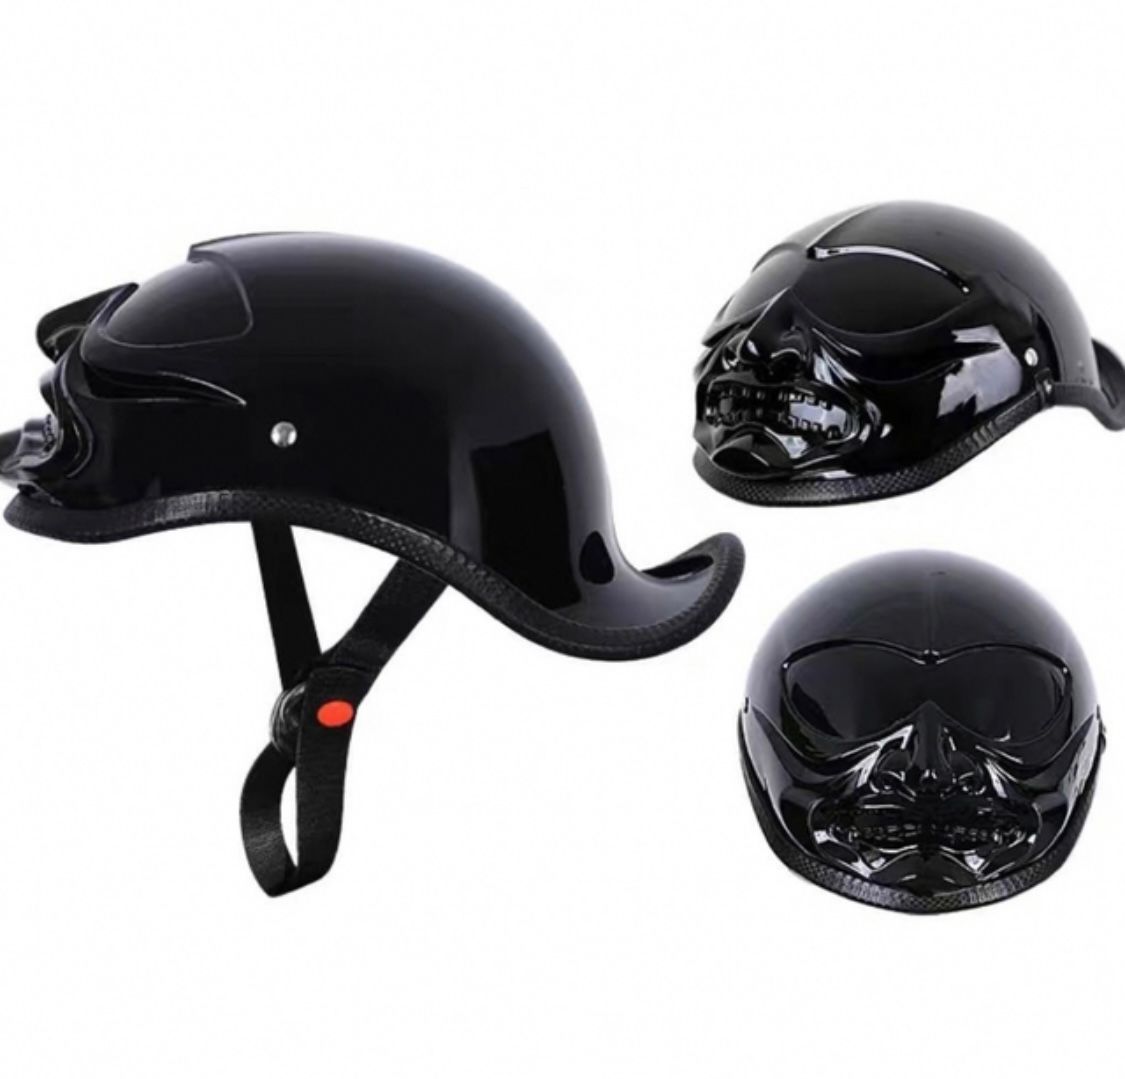 ハーレーダックテールヘルメット バイクヘルメット ハーレー 半キャップハーフヘルメット 軽量M〜XL